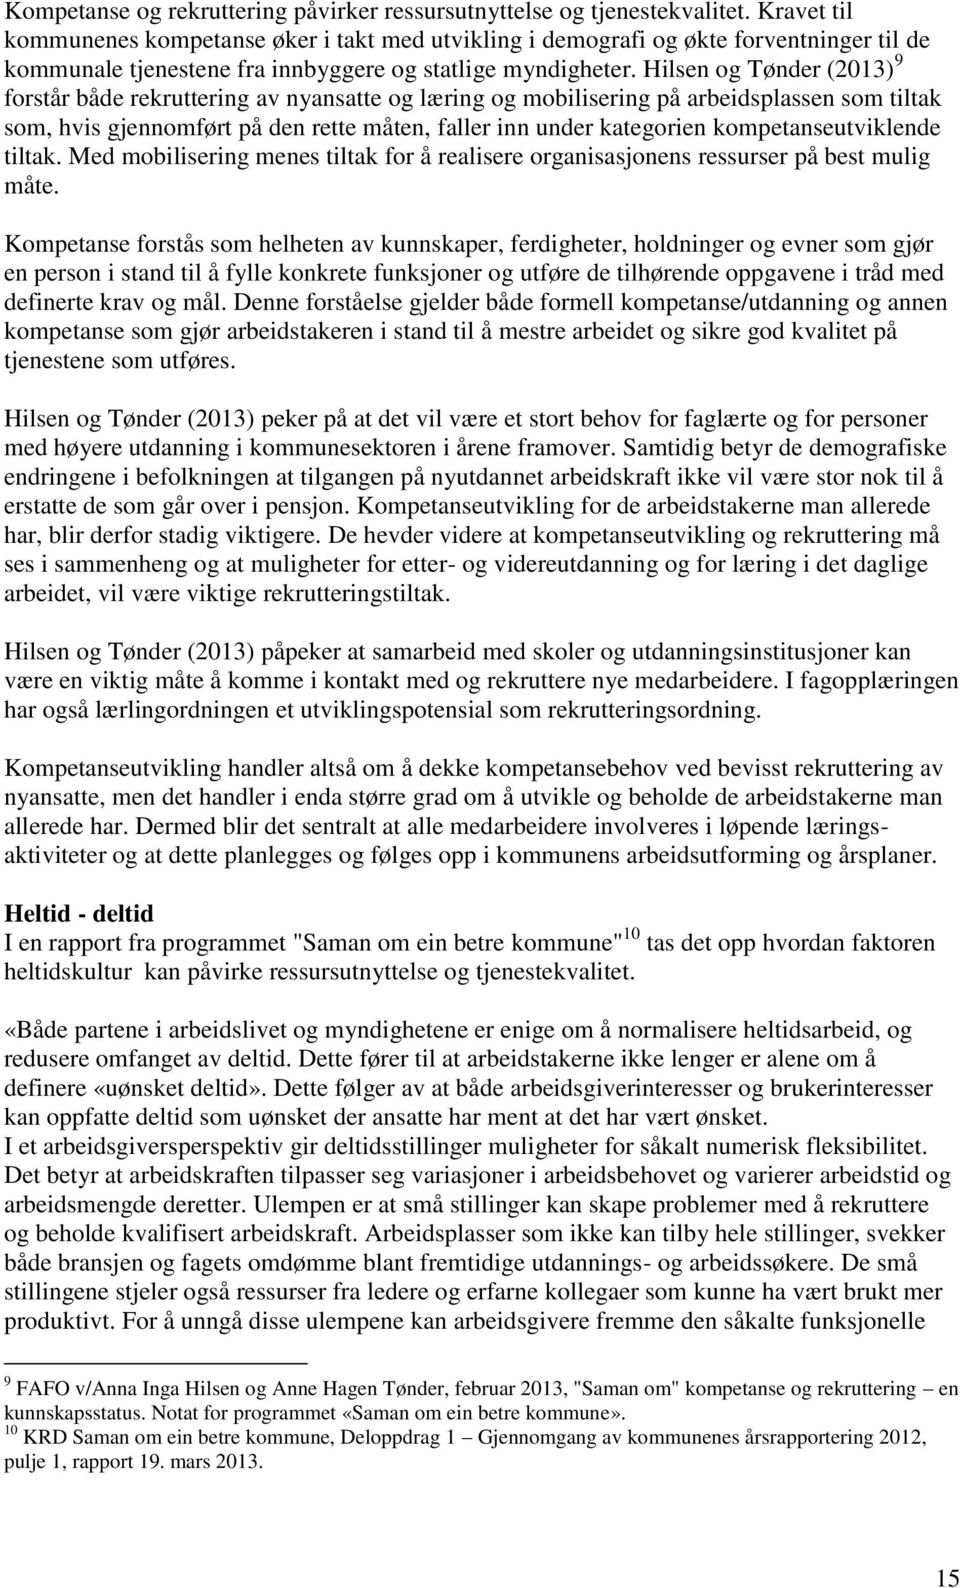 Hilsen og Tønder (2013) 9 forstår både rekruttering av nyansatte og læring og mobilisering på arbeidsplassen som tiltak som, hvis gjennomført på den rette måten, faller inn under kategorien